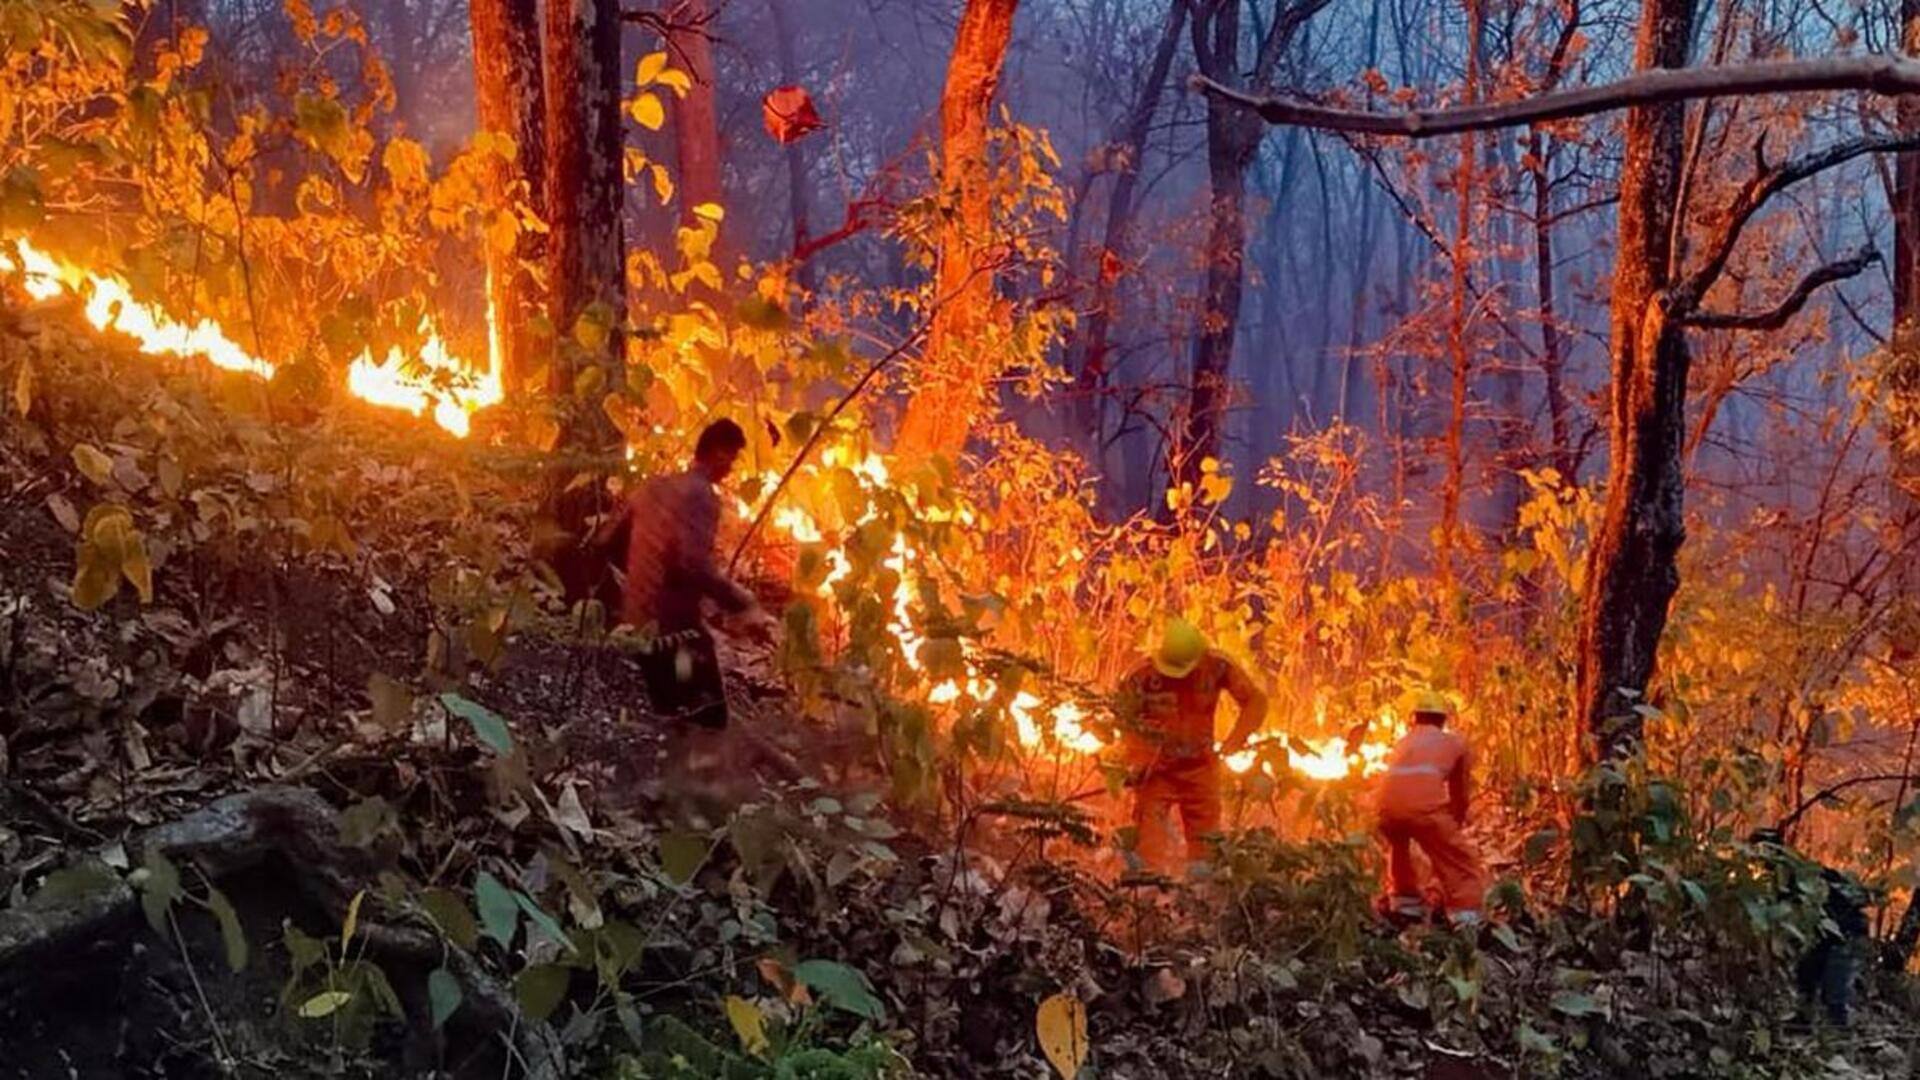 उत्तराखंड: जंगल की आग पर सुप्रीम कोर्ट सख्त, केंद्र और राज्य सरकार से पूछे तीखे सवाल